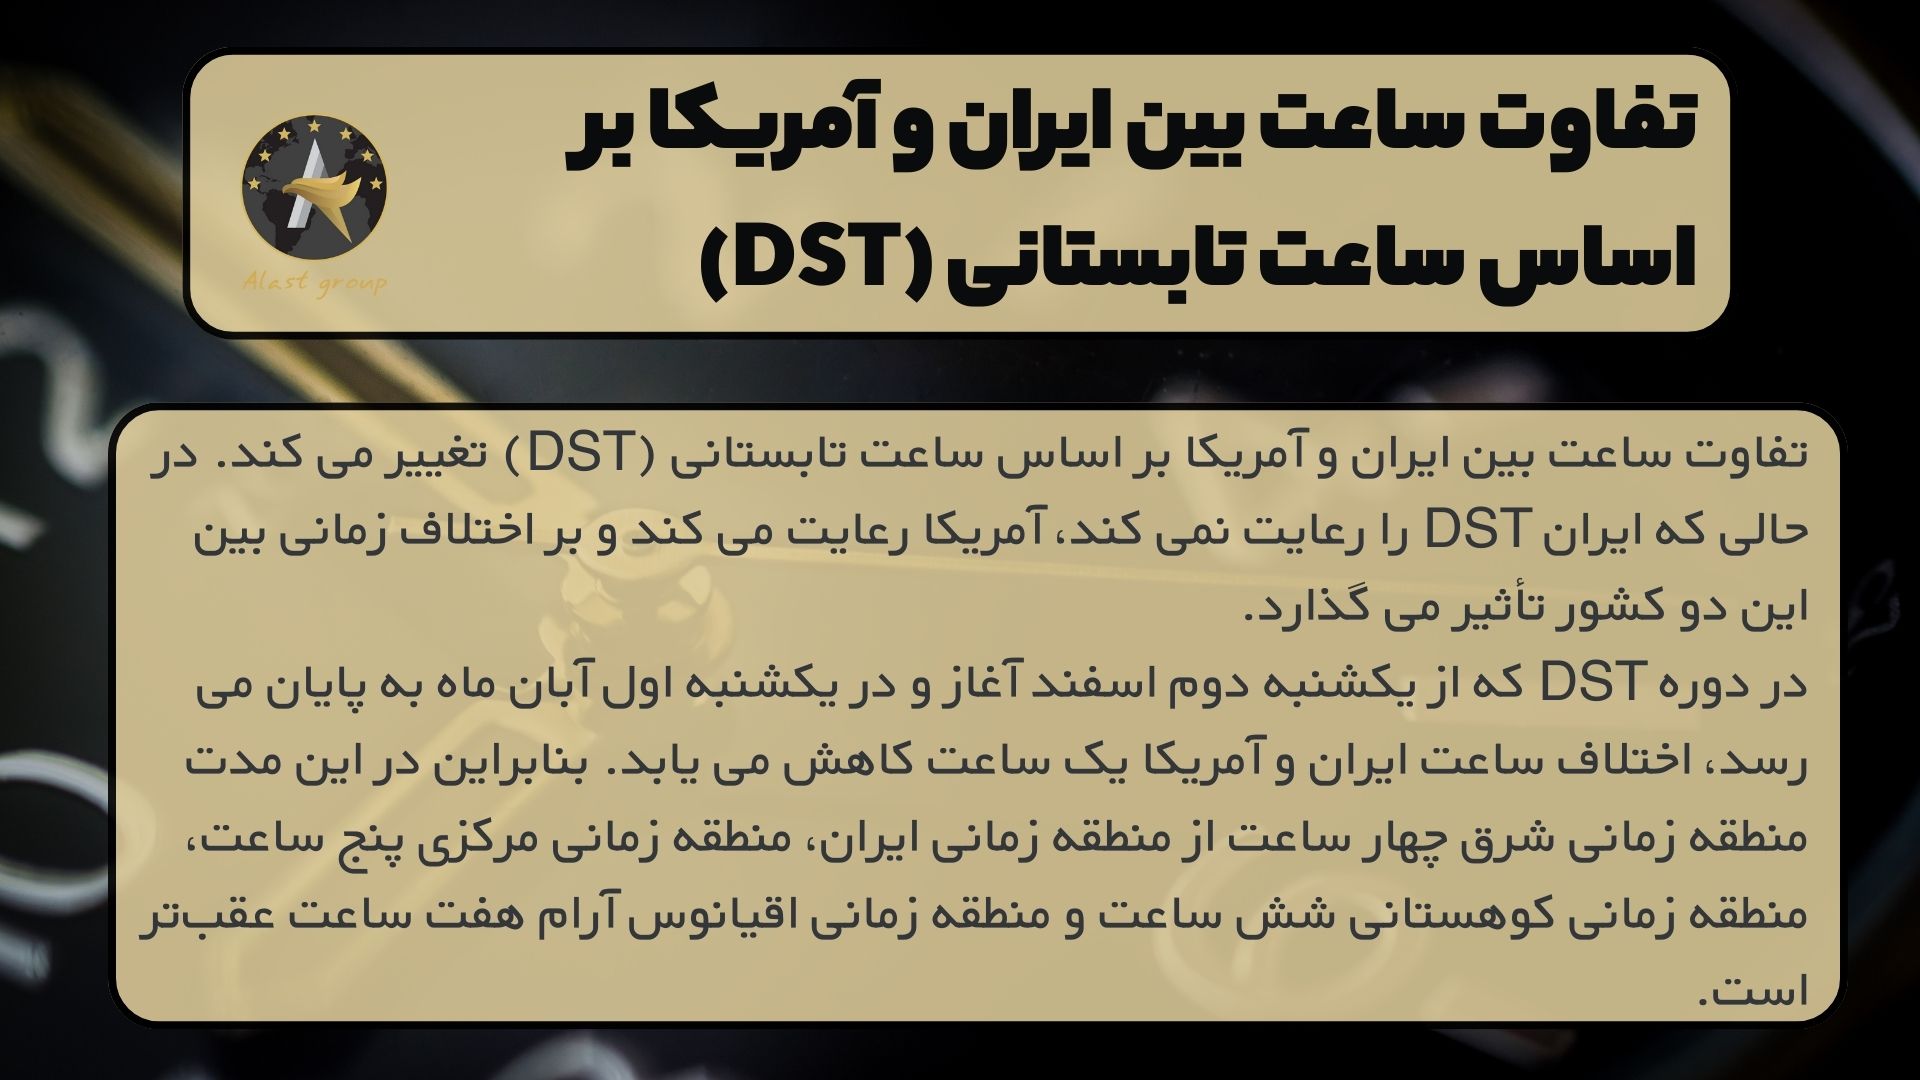 تفاوت ساعت بین ایران و آمریکا بر اساس ساعت تابستانی (DST)